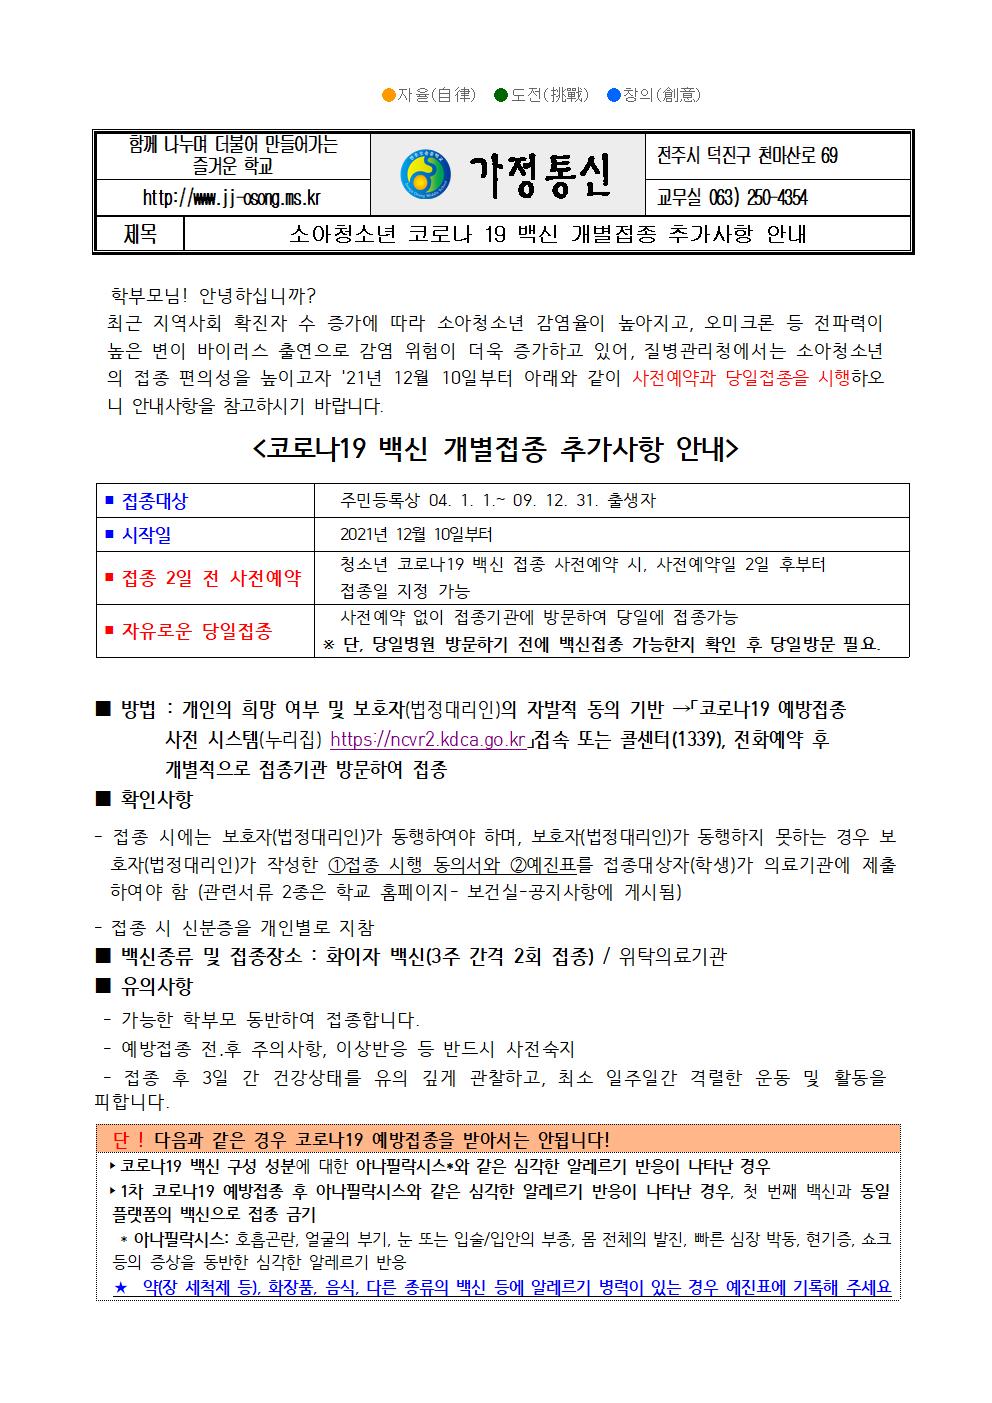 코로나 19 예방접종 추가 안내 가정통신문(12.16.)001